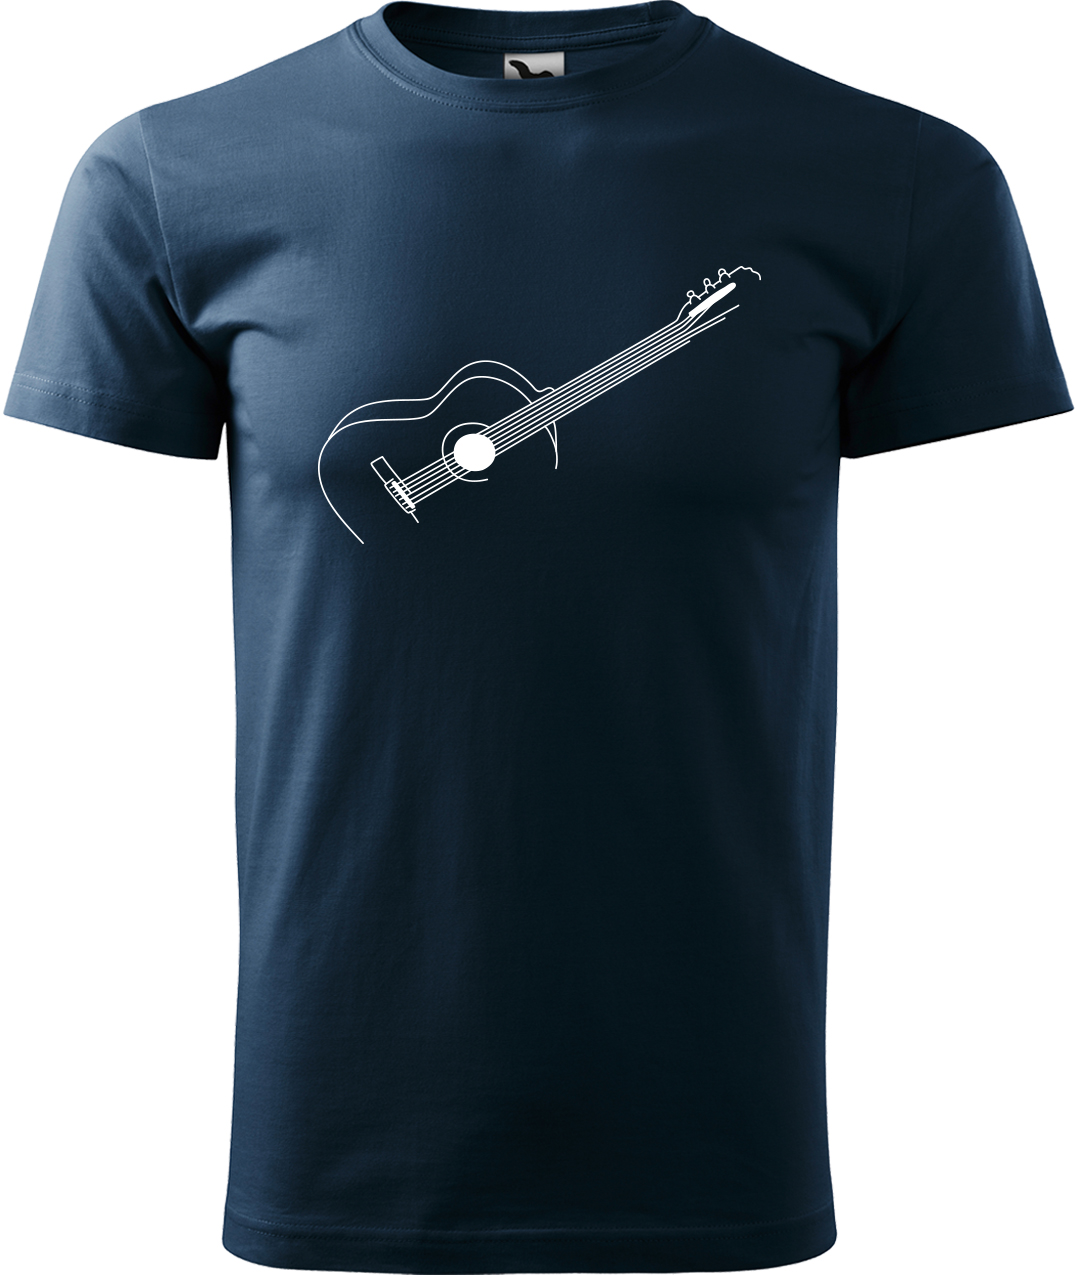 Pánské tričko s kytarou - Stylizovaná kytara Velikost: 4XL, Barva: Námořní modrá (02), Střih: pánský